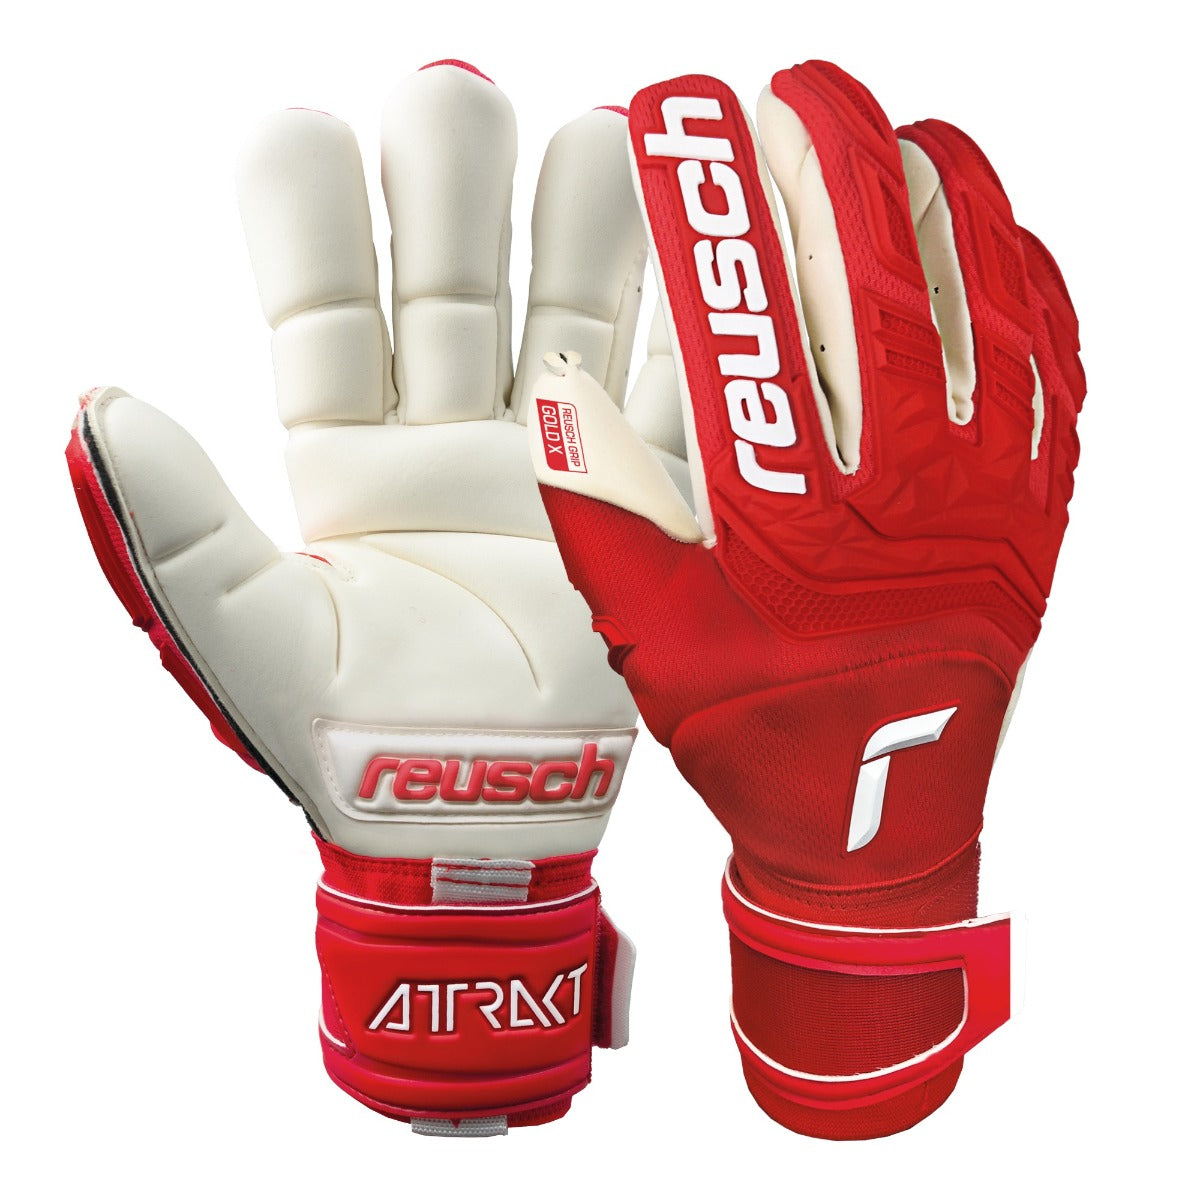 Reusch Attrakt Freegel Gold X Finger Support Goalkeeper Gloves - Red-White (Pair)